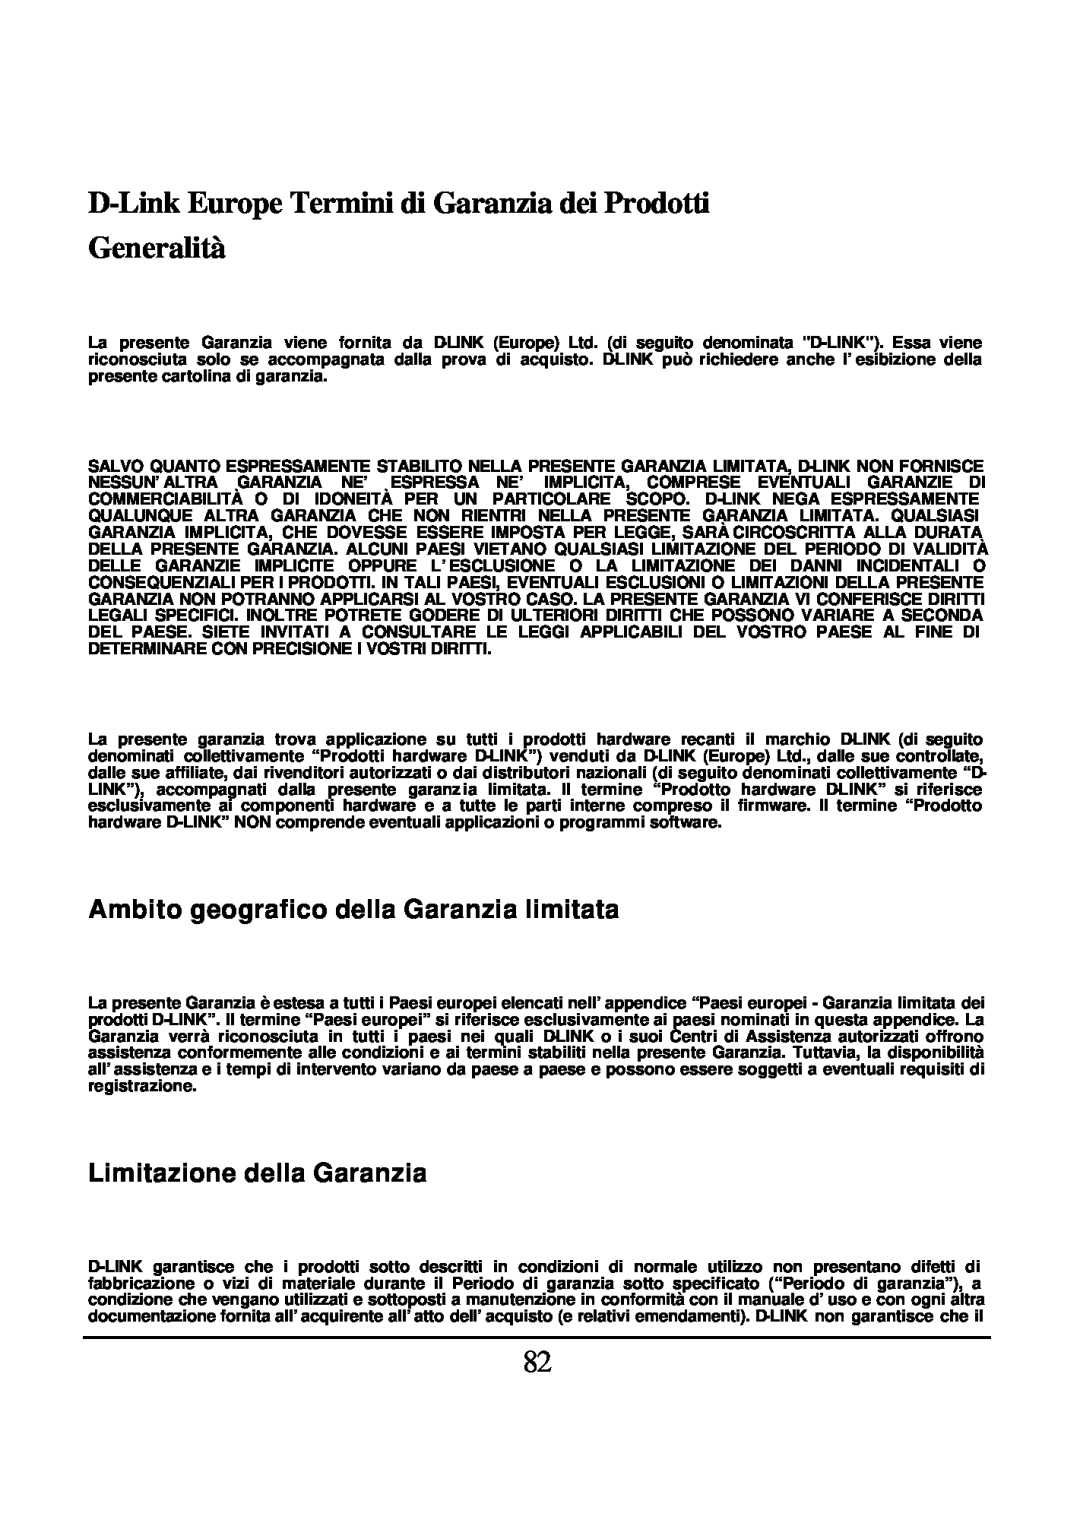 D-Link DES-1526 manual D-LinkEurope Termini di Garanzia dei Prodotti, Generalità, Ambito geografico della Garanzia limitata 